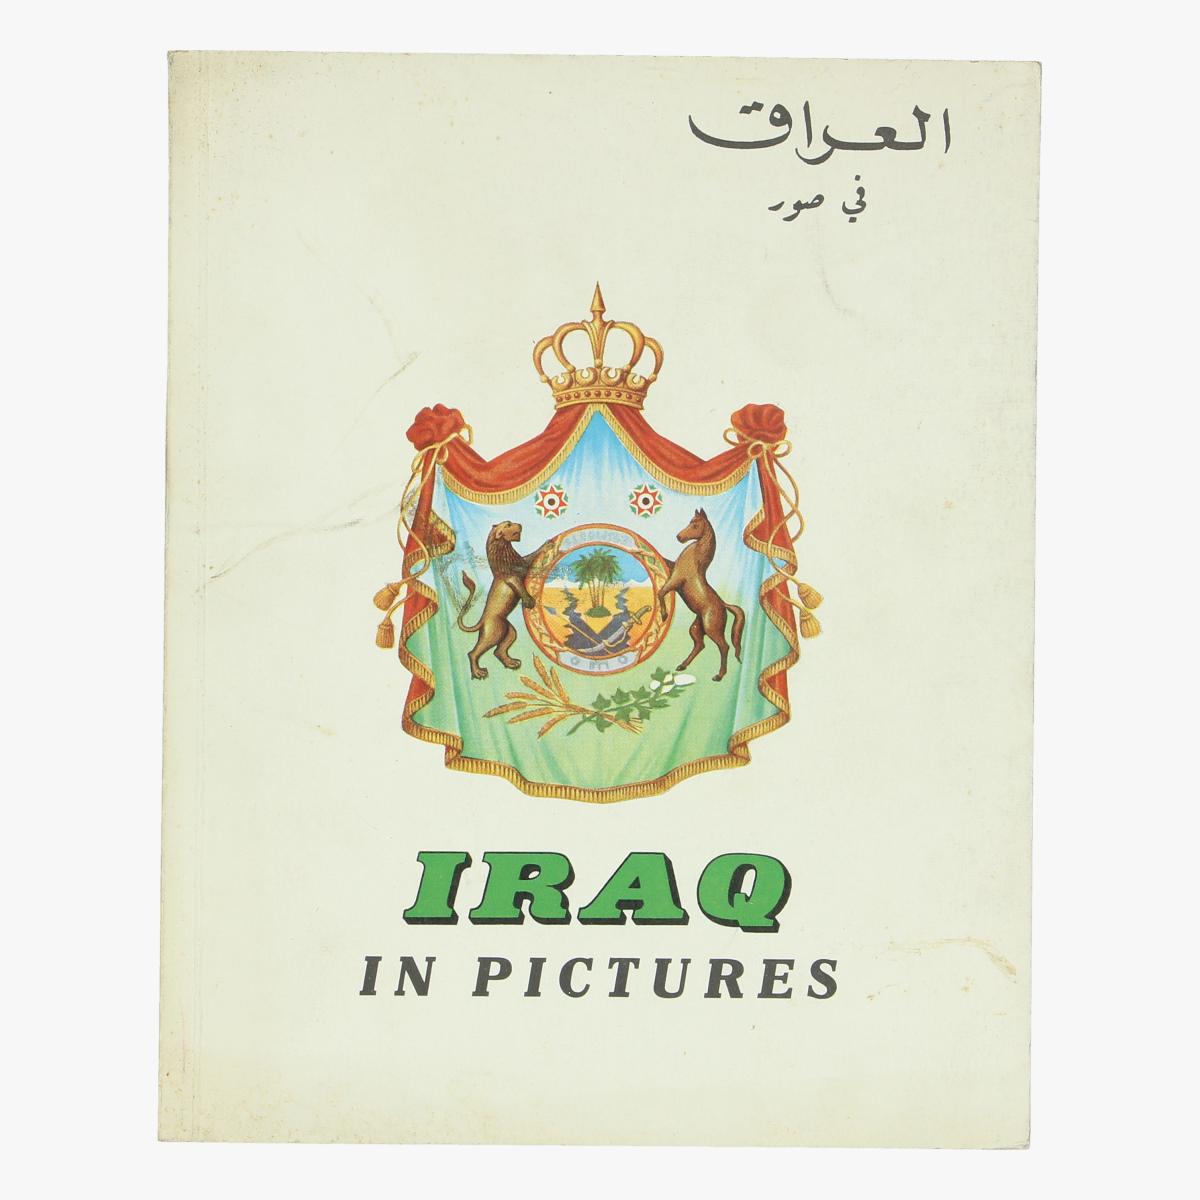 Afbeeldingen van expo 58 boek  iraq in pictures 